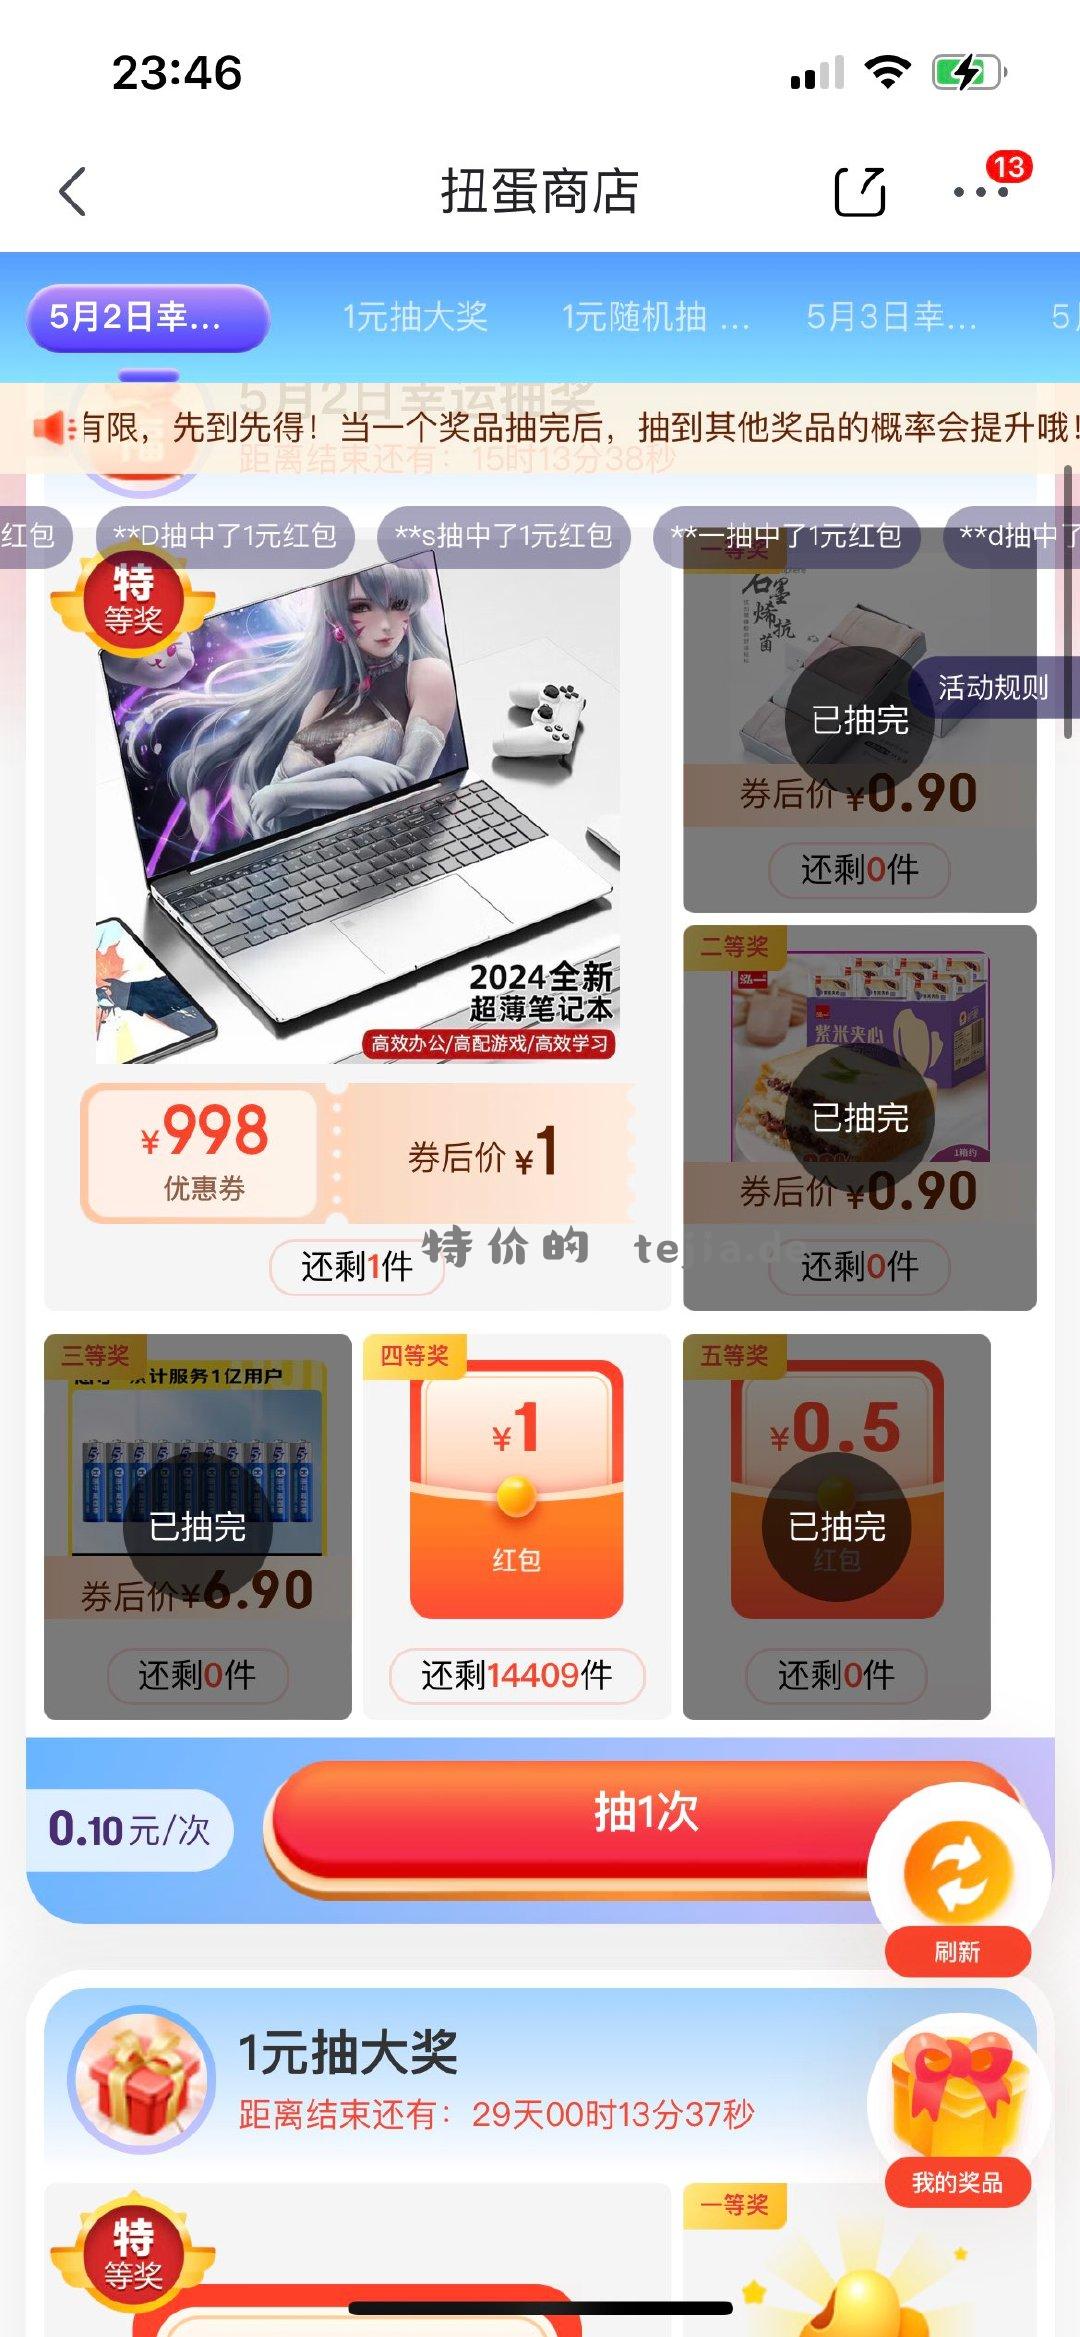 京东app-我的-更多游戏-扭蛋商店 支付0.1亓 有1虹包 - 特价的